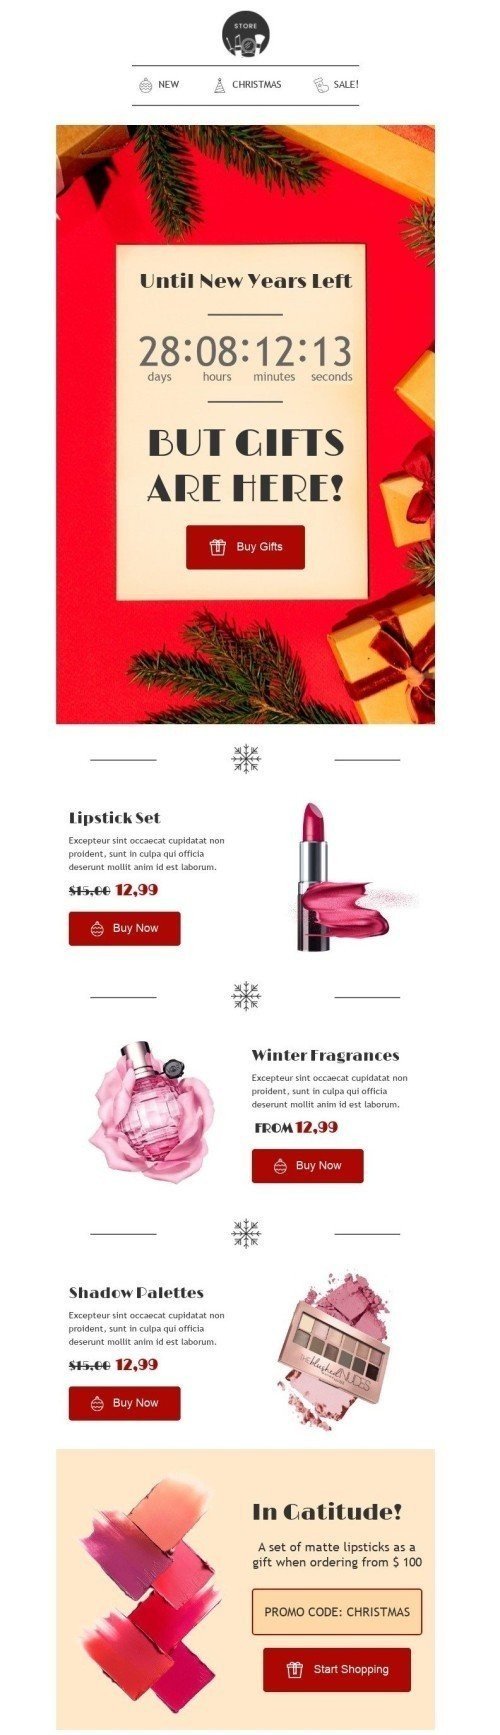 Plantilla de correo electrónico «Los regalos están aquí» de Navidad para la industria de Belleza y cuidado personal mobile view